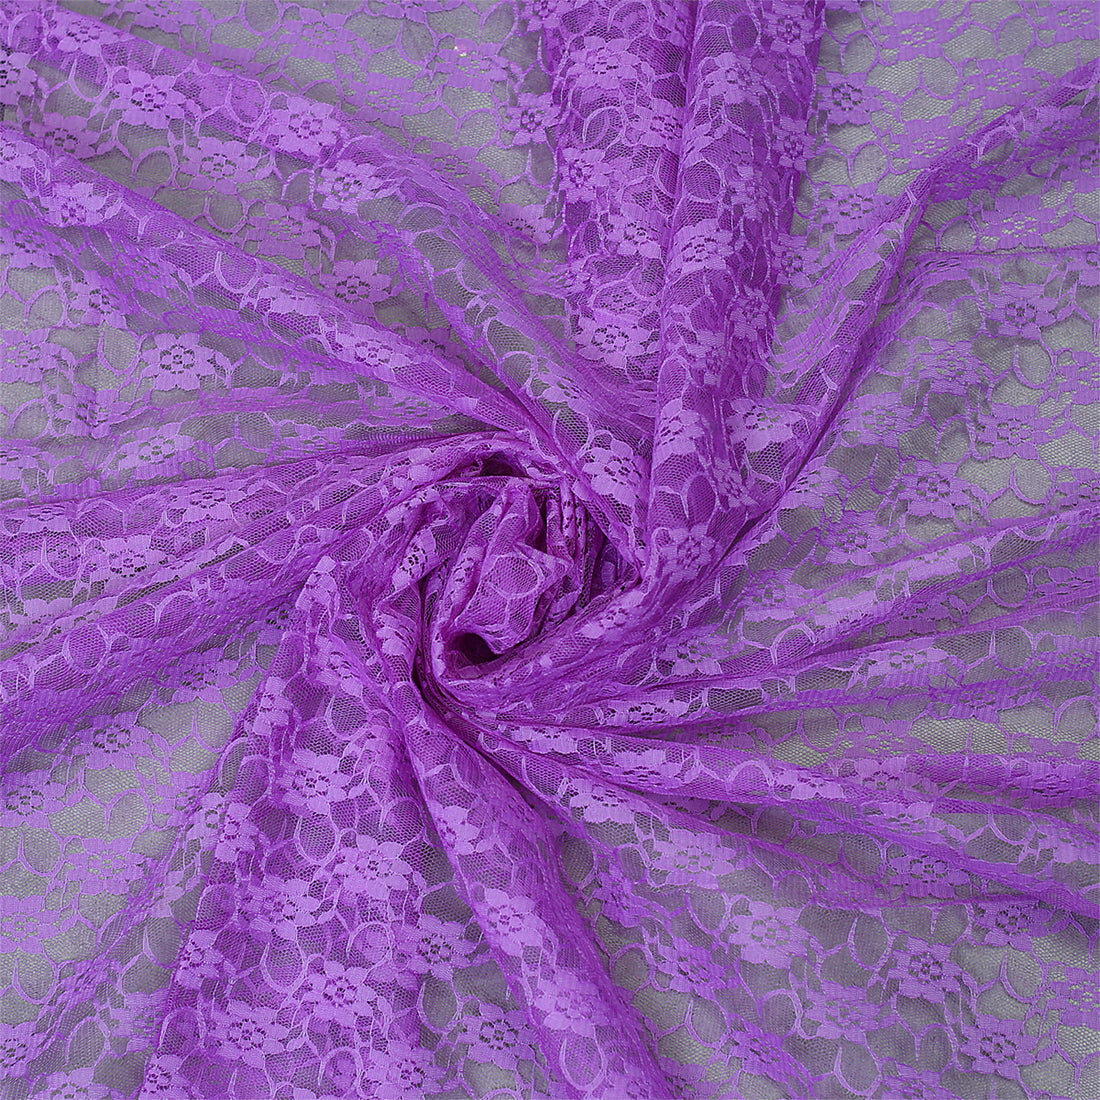 Lavender,314c5f30-091f-474a-8d4b-94b4fdaa8cd4